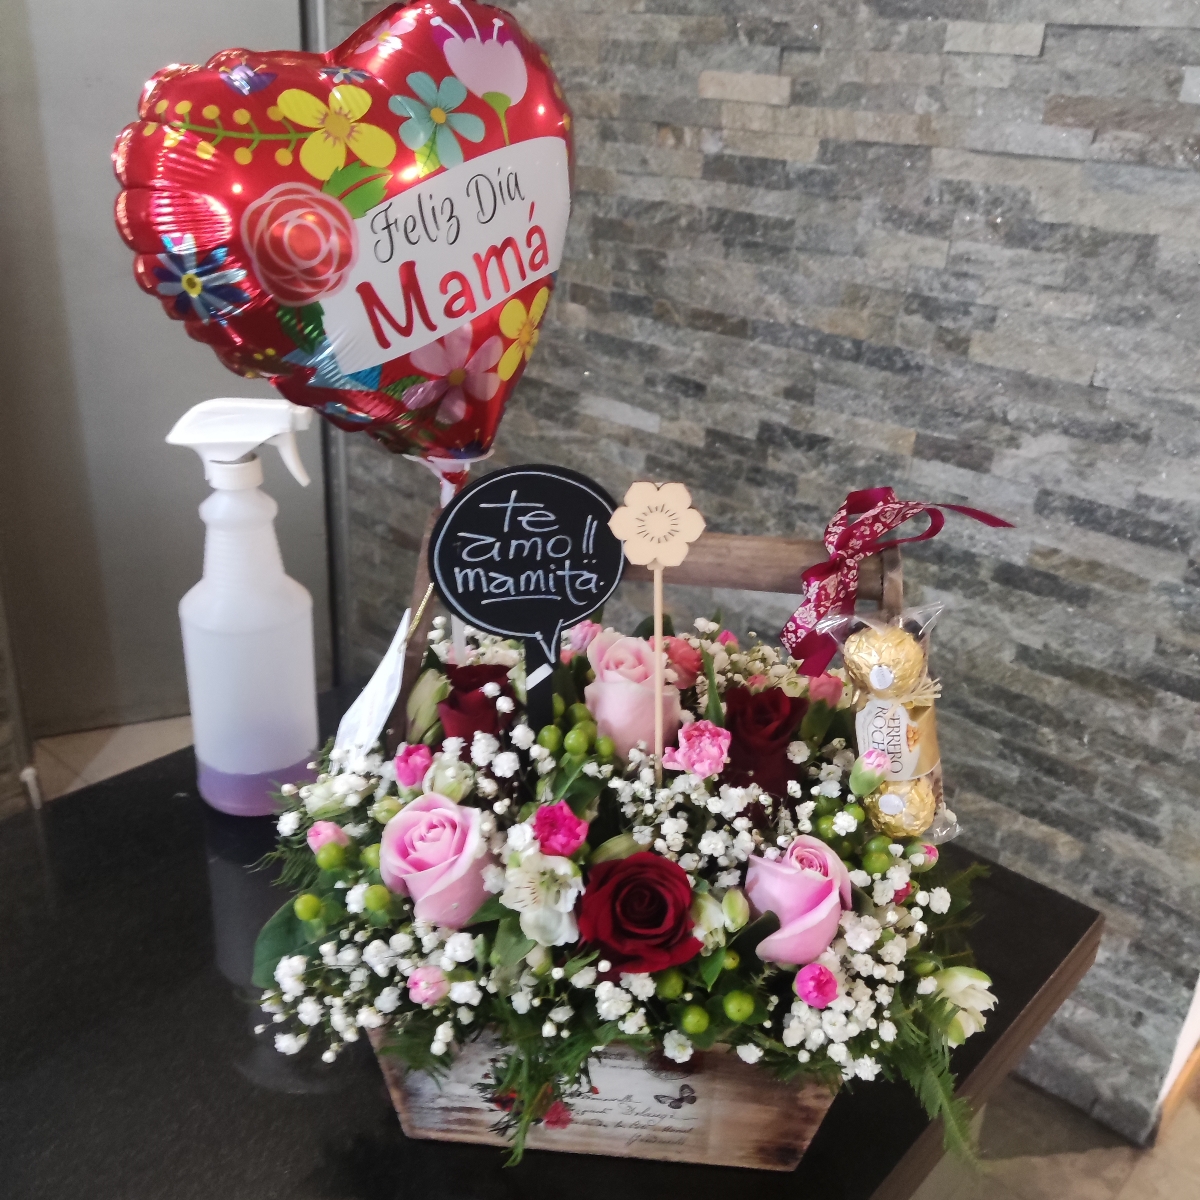 Canasto para mamá - Arreglo floral con rosas, miniclaveles, astromelias, chocolates, globo y pizarra - Pedido 255161